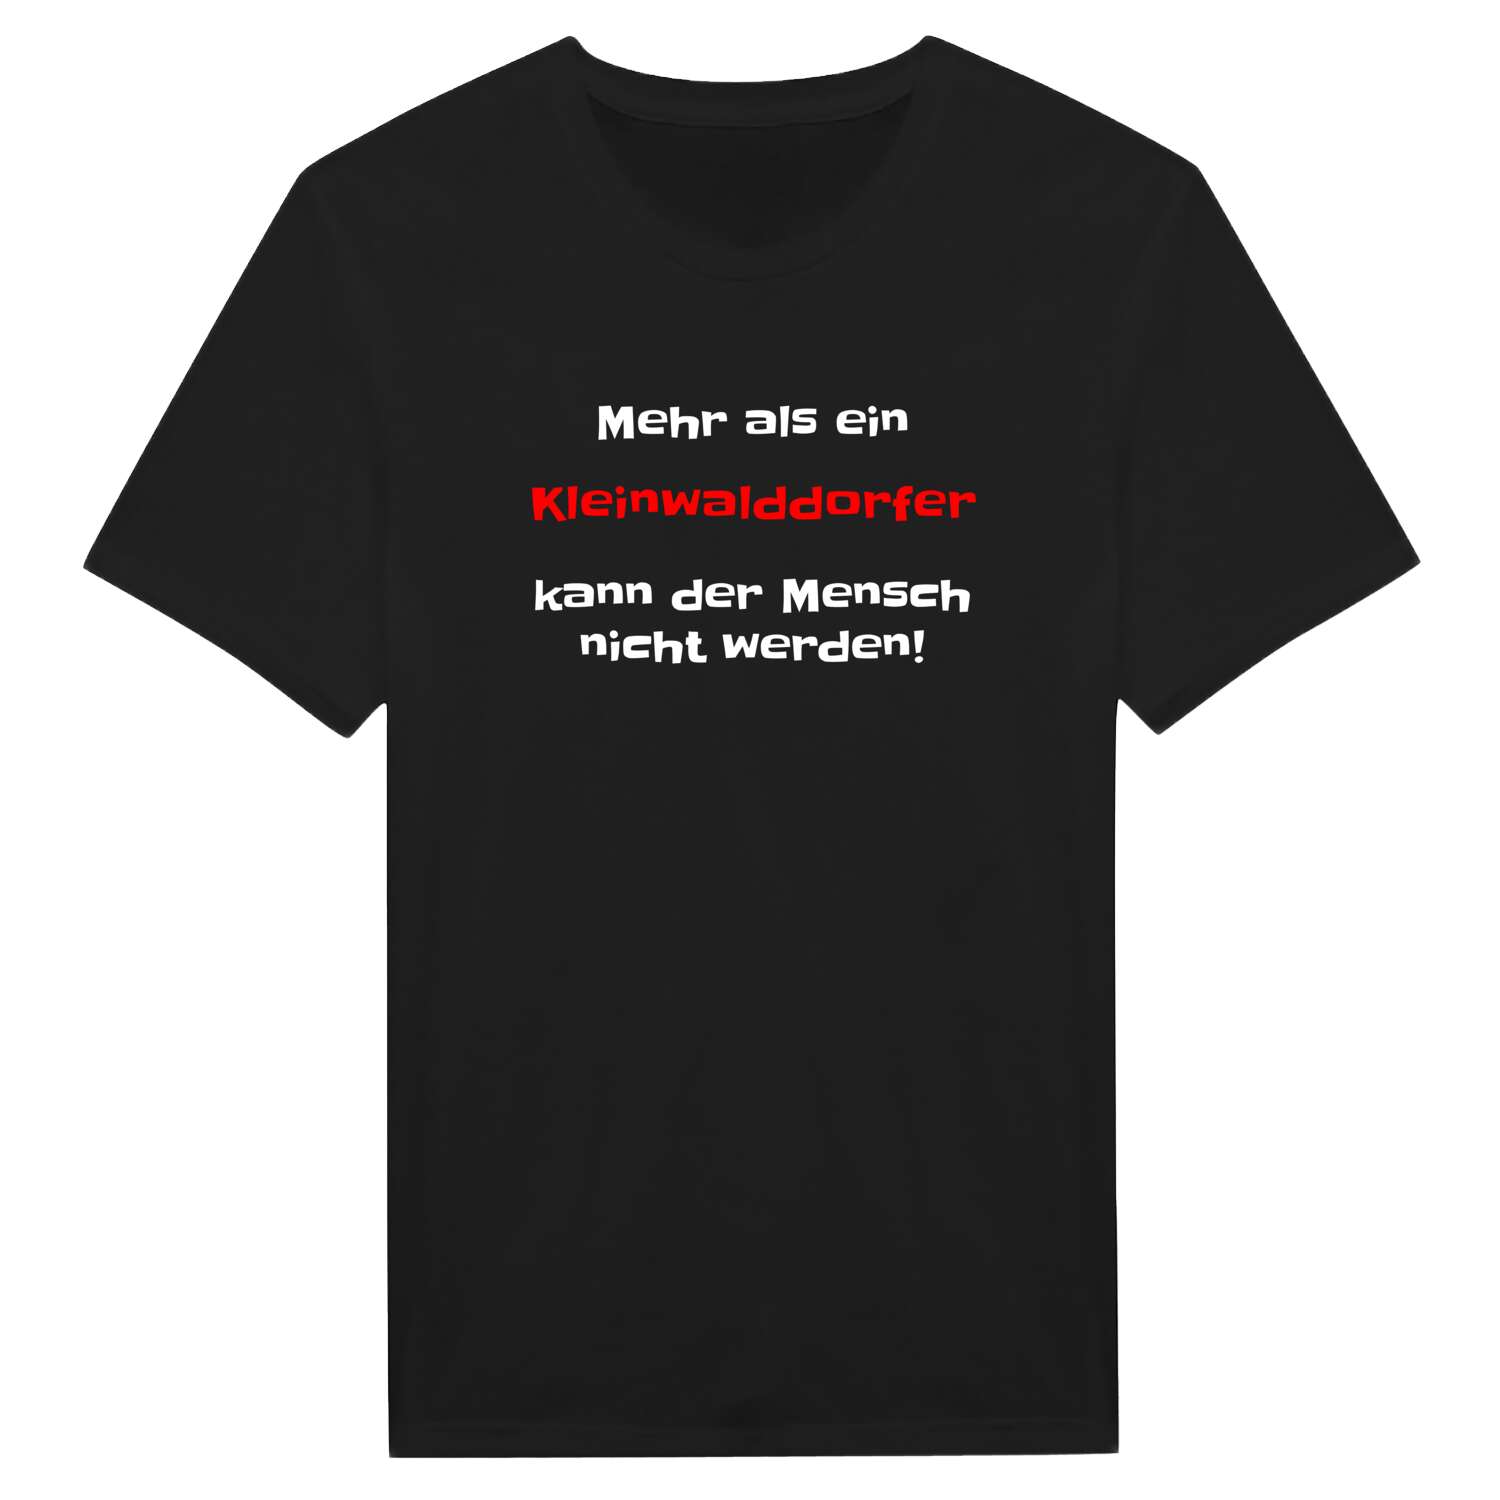 Kleinwalddorf T-Shirt »Mehr als ein«